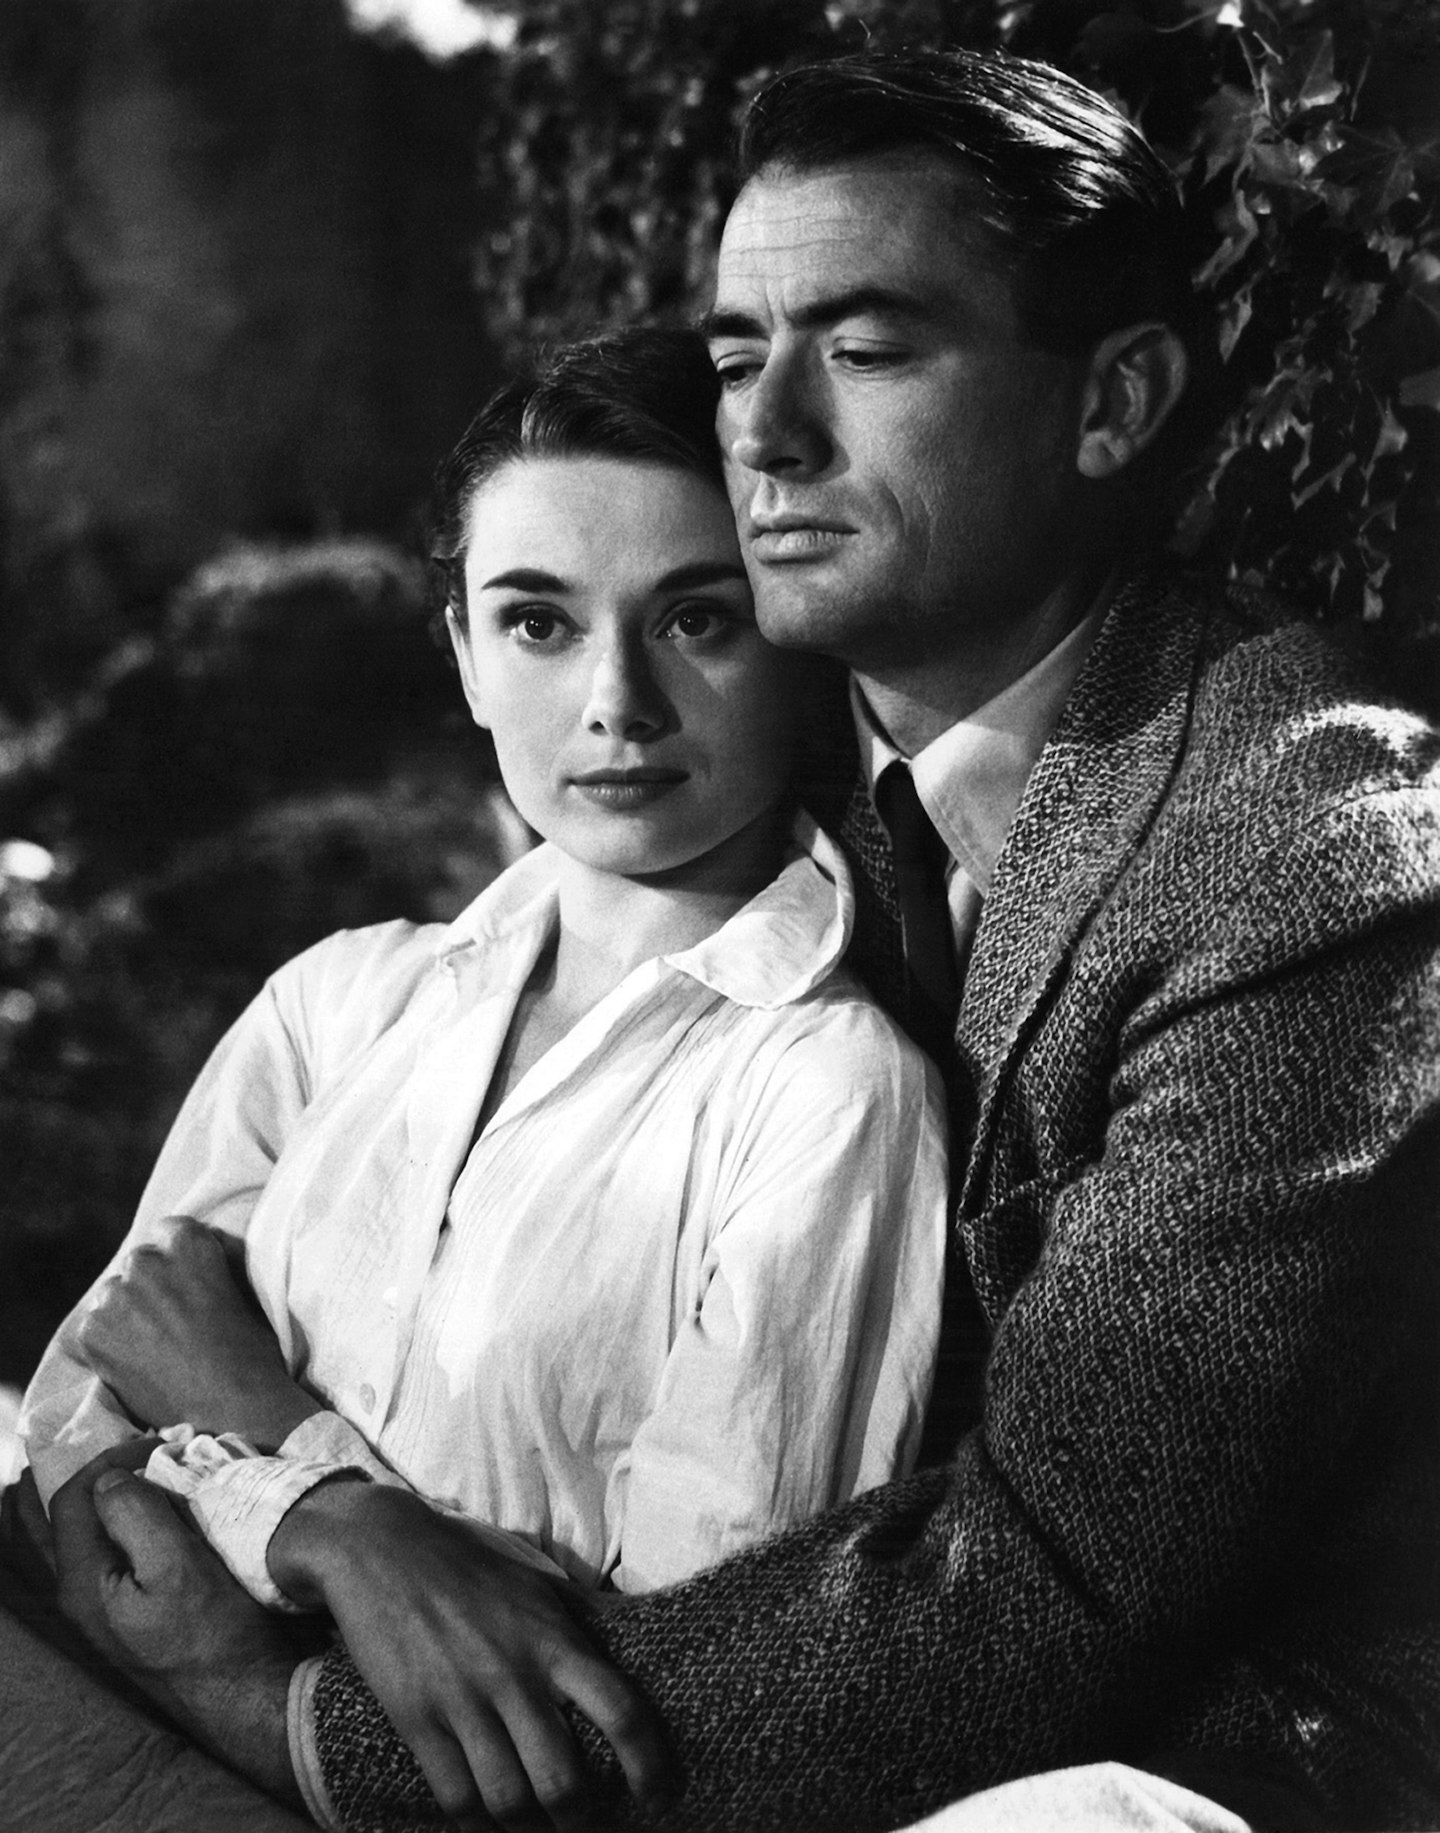 Gregory Peck and Audrey Hepburn